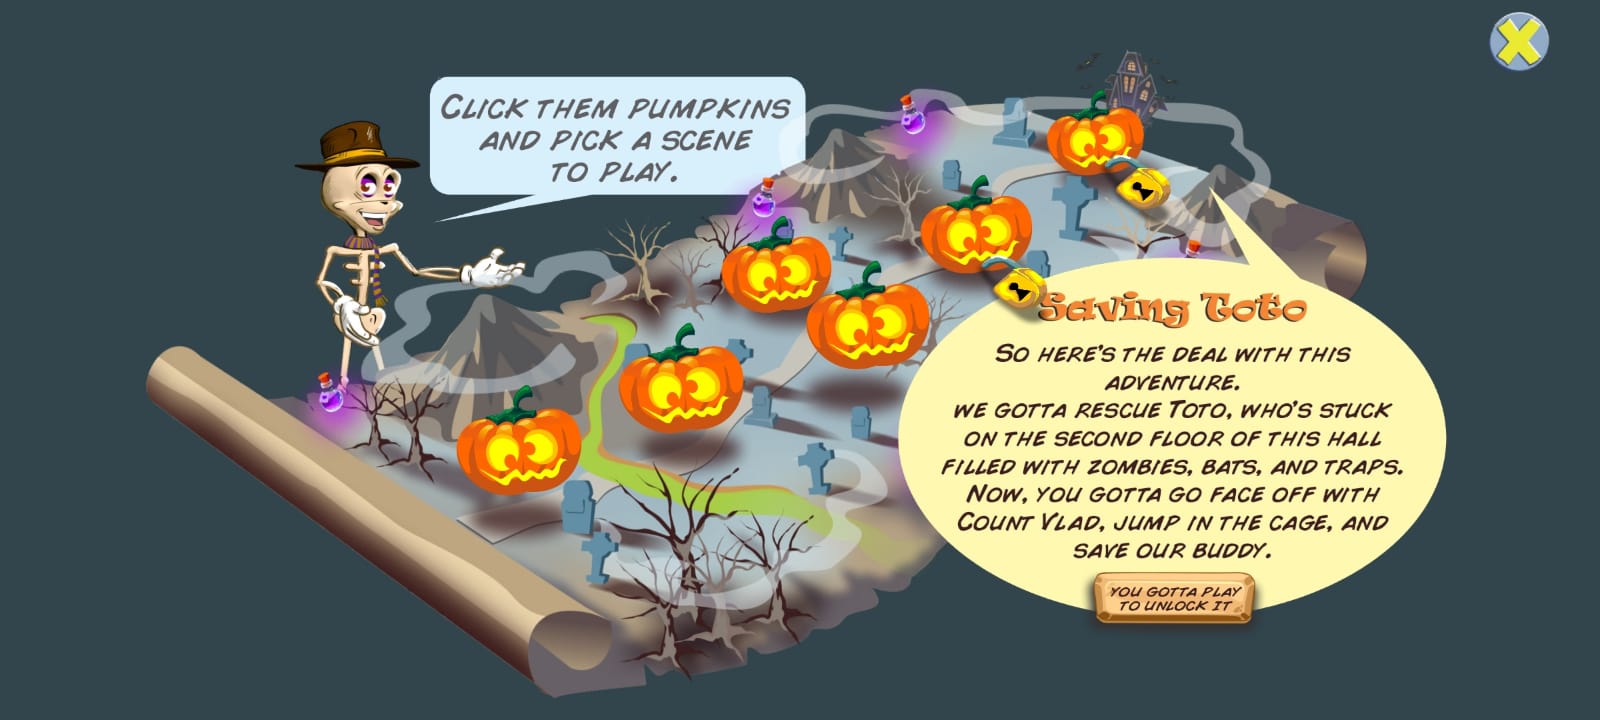 Scarica Pumpkins Quest gratis per Android.